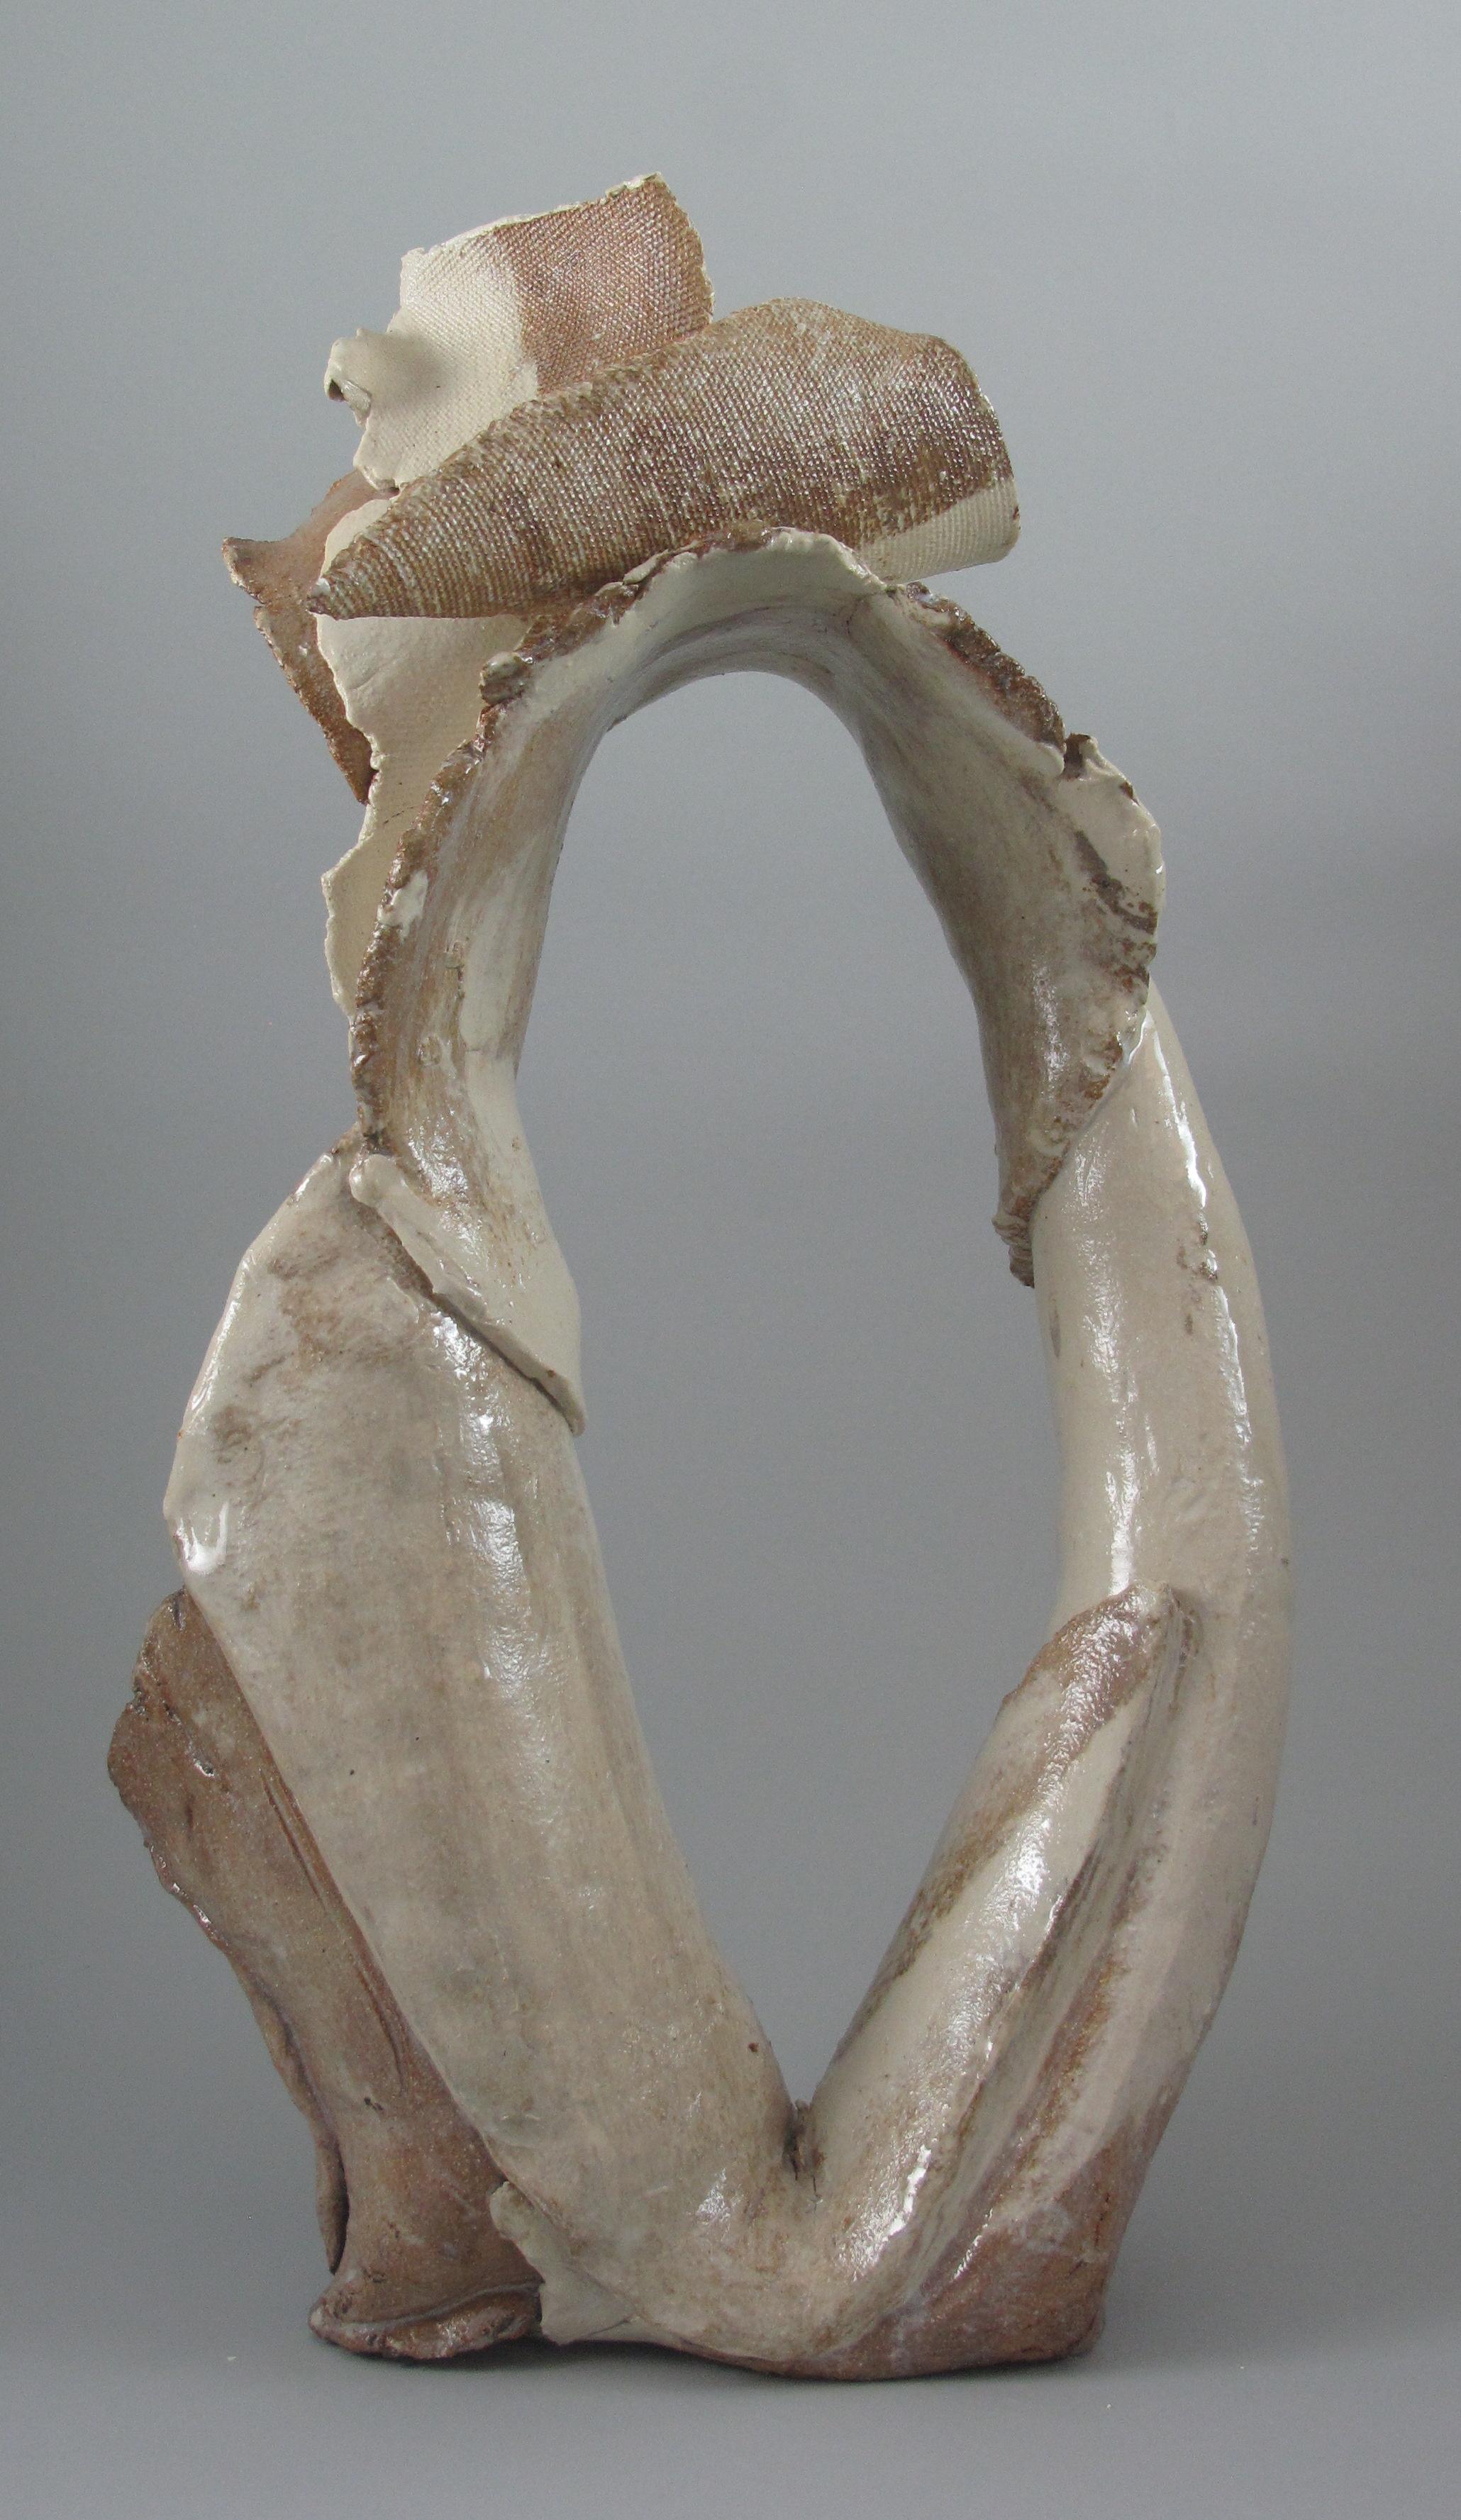 "Remnant Loop", gestural, ceramic, sculpture, white, brown, stoneware - Sculpture by Sara Fine-Wilson